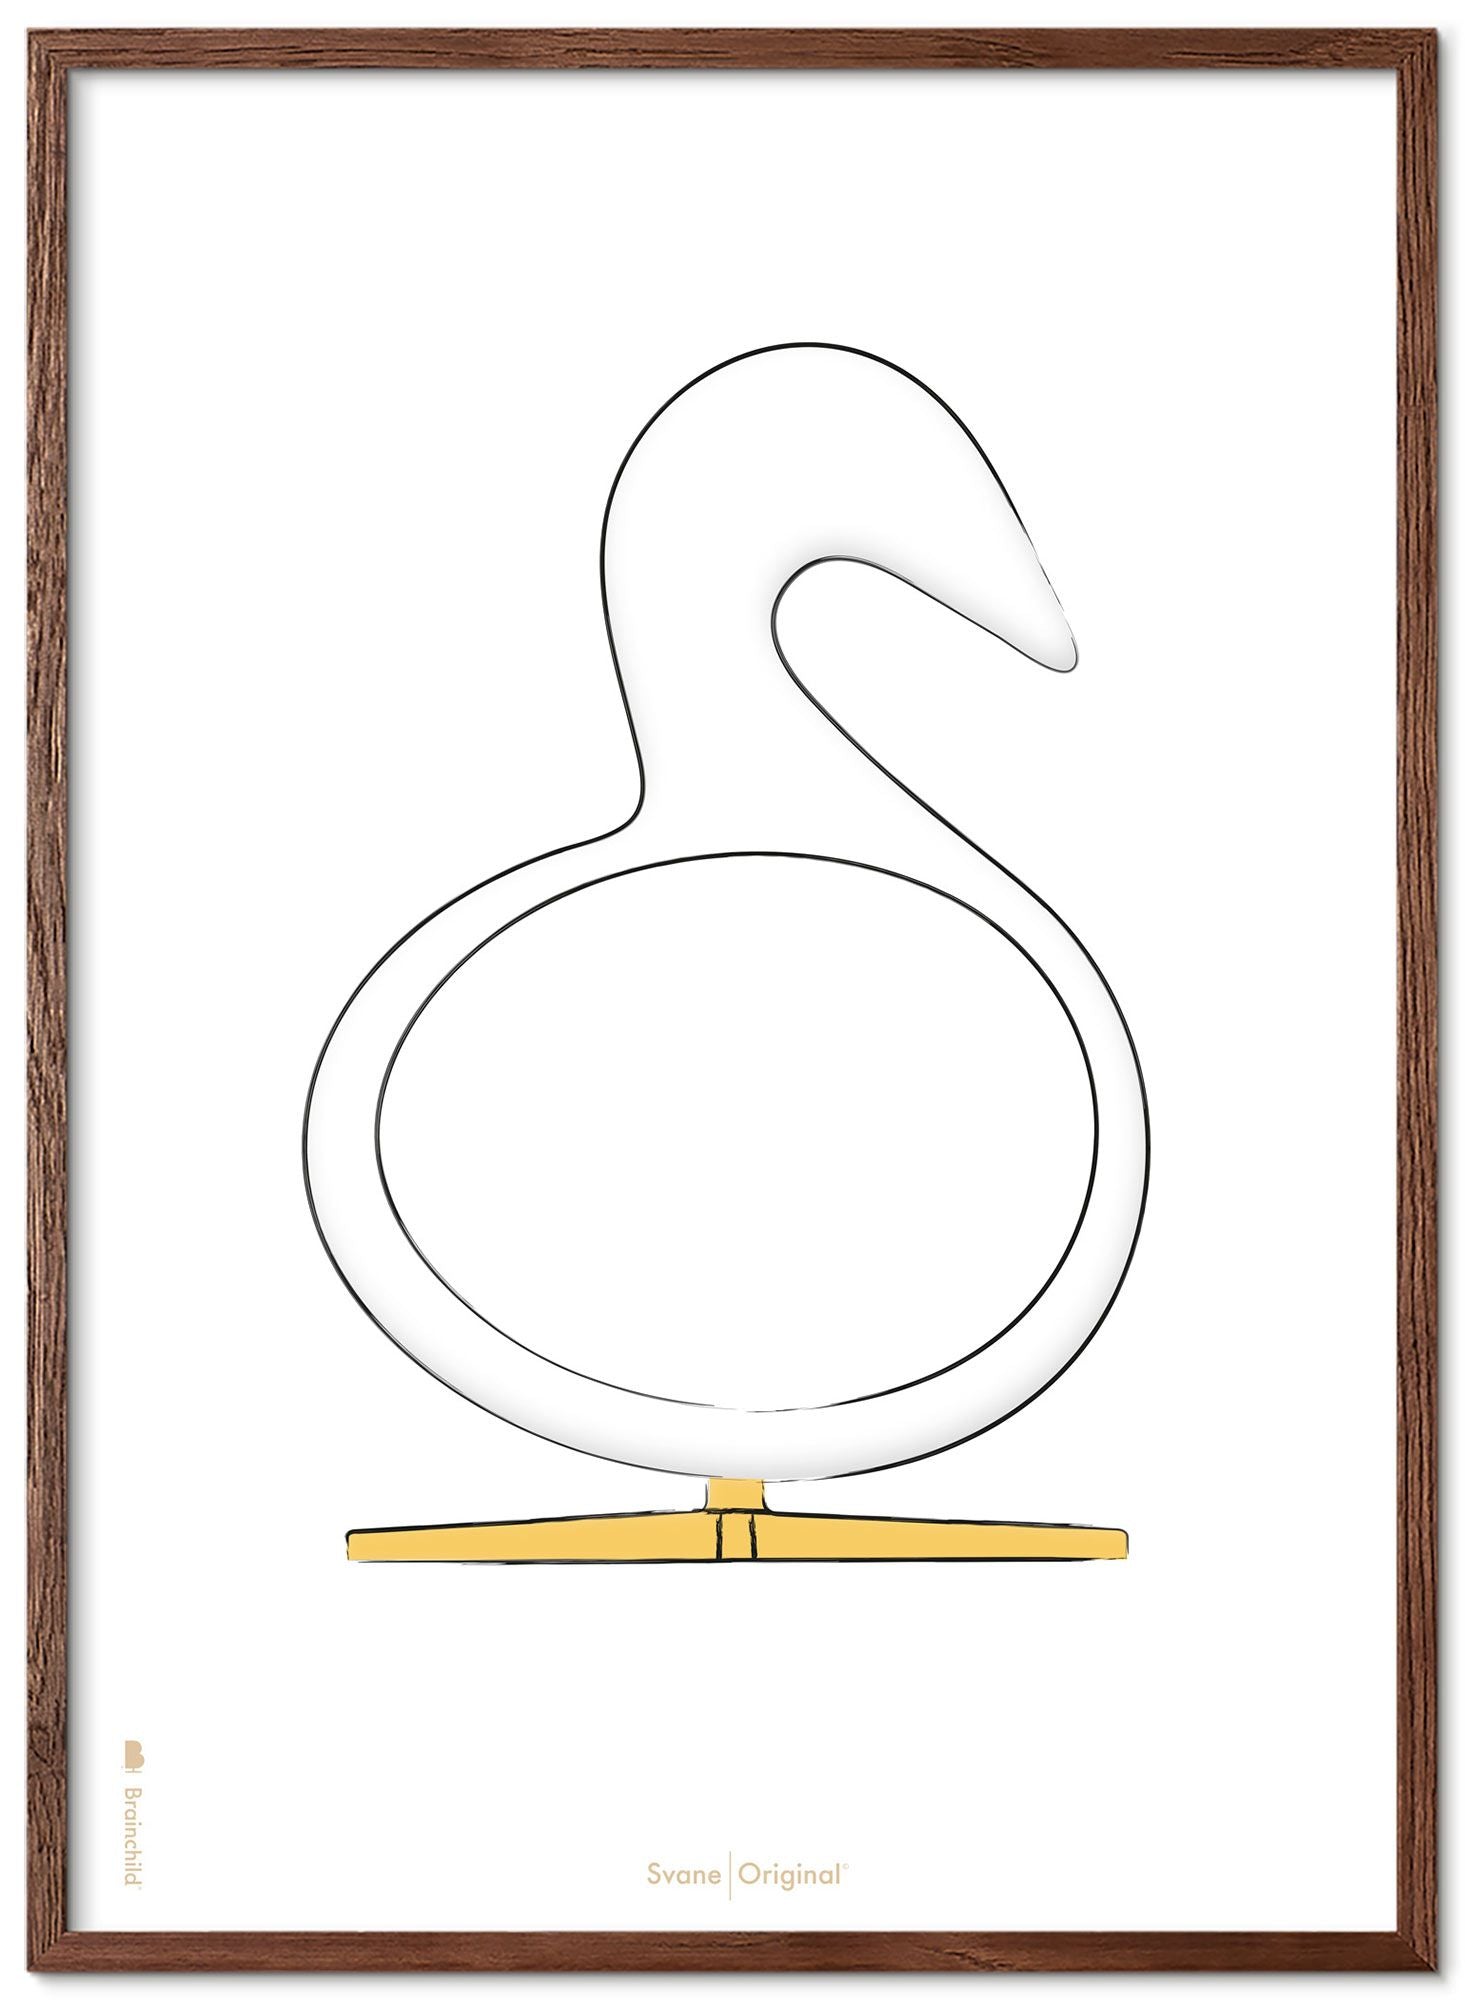 Schema poster di schizzi di disegno del cigno da gioco in legno scuro 30x40 cm, sfondo bianco